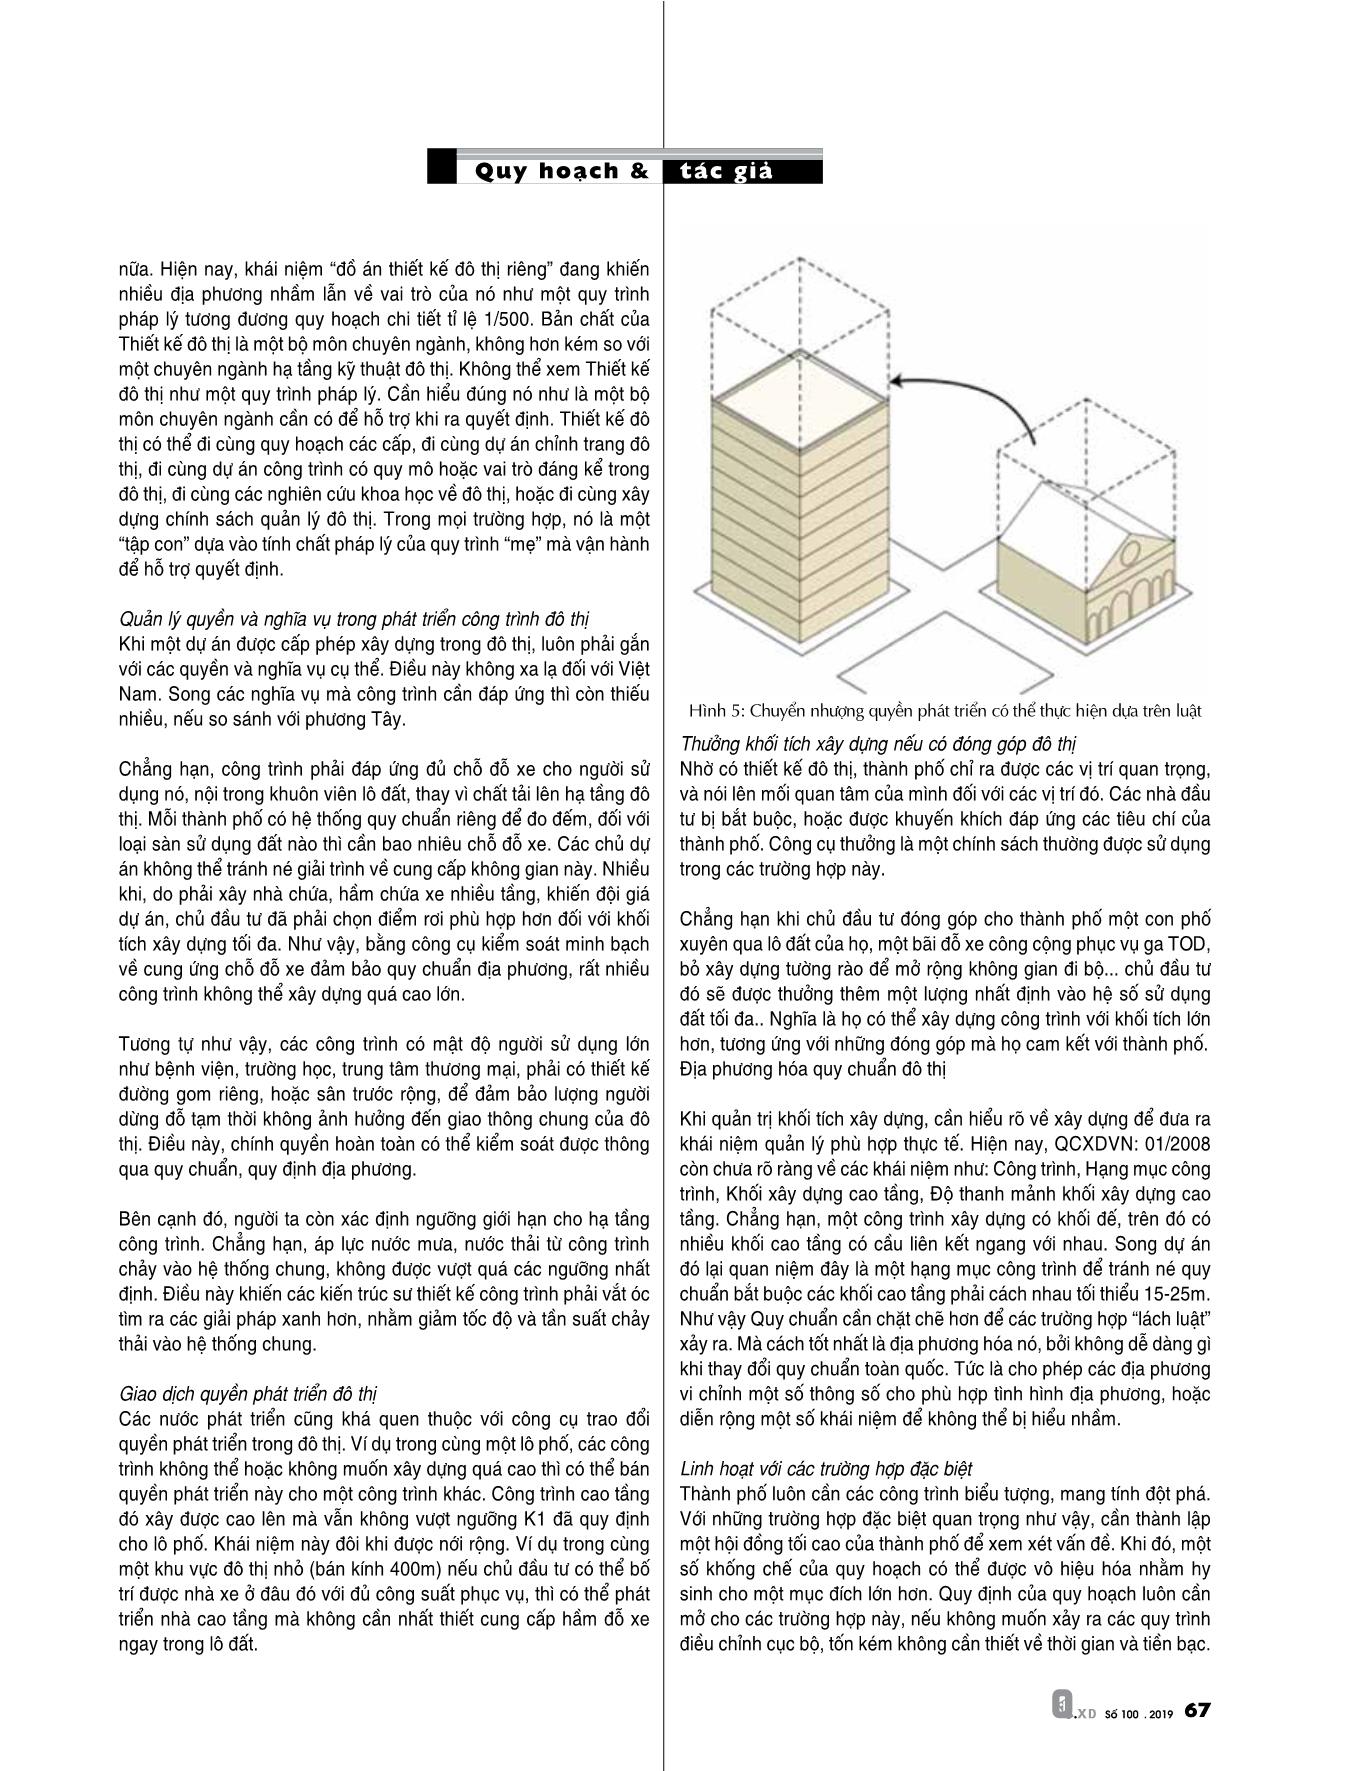 Đổi mới phương pháp luận quy hoạch và quản lý phát triển đô thị: Từ thực tiễn đến yêu cầu đổi mới (Phần 2) trang 4